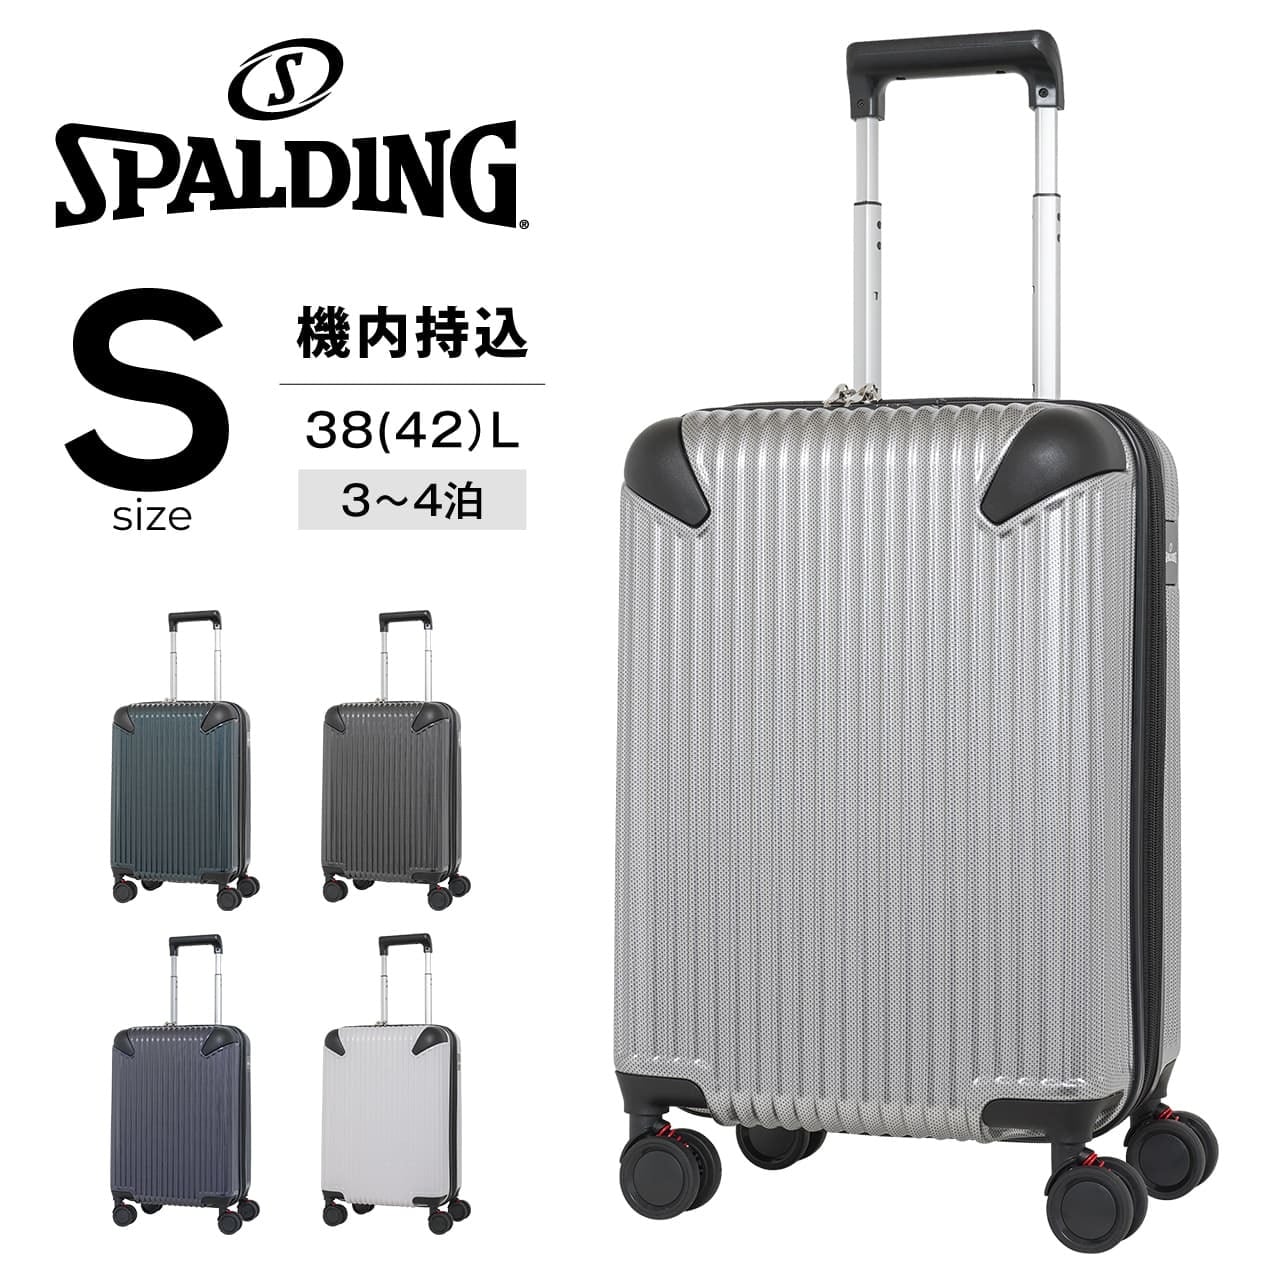 SPALDING スーツケース Sサイズ サスペンション付き キャリーケース